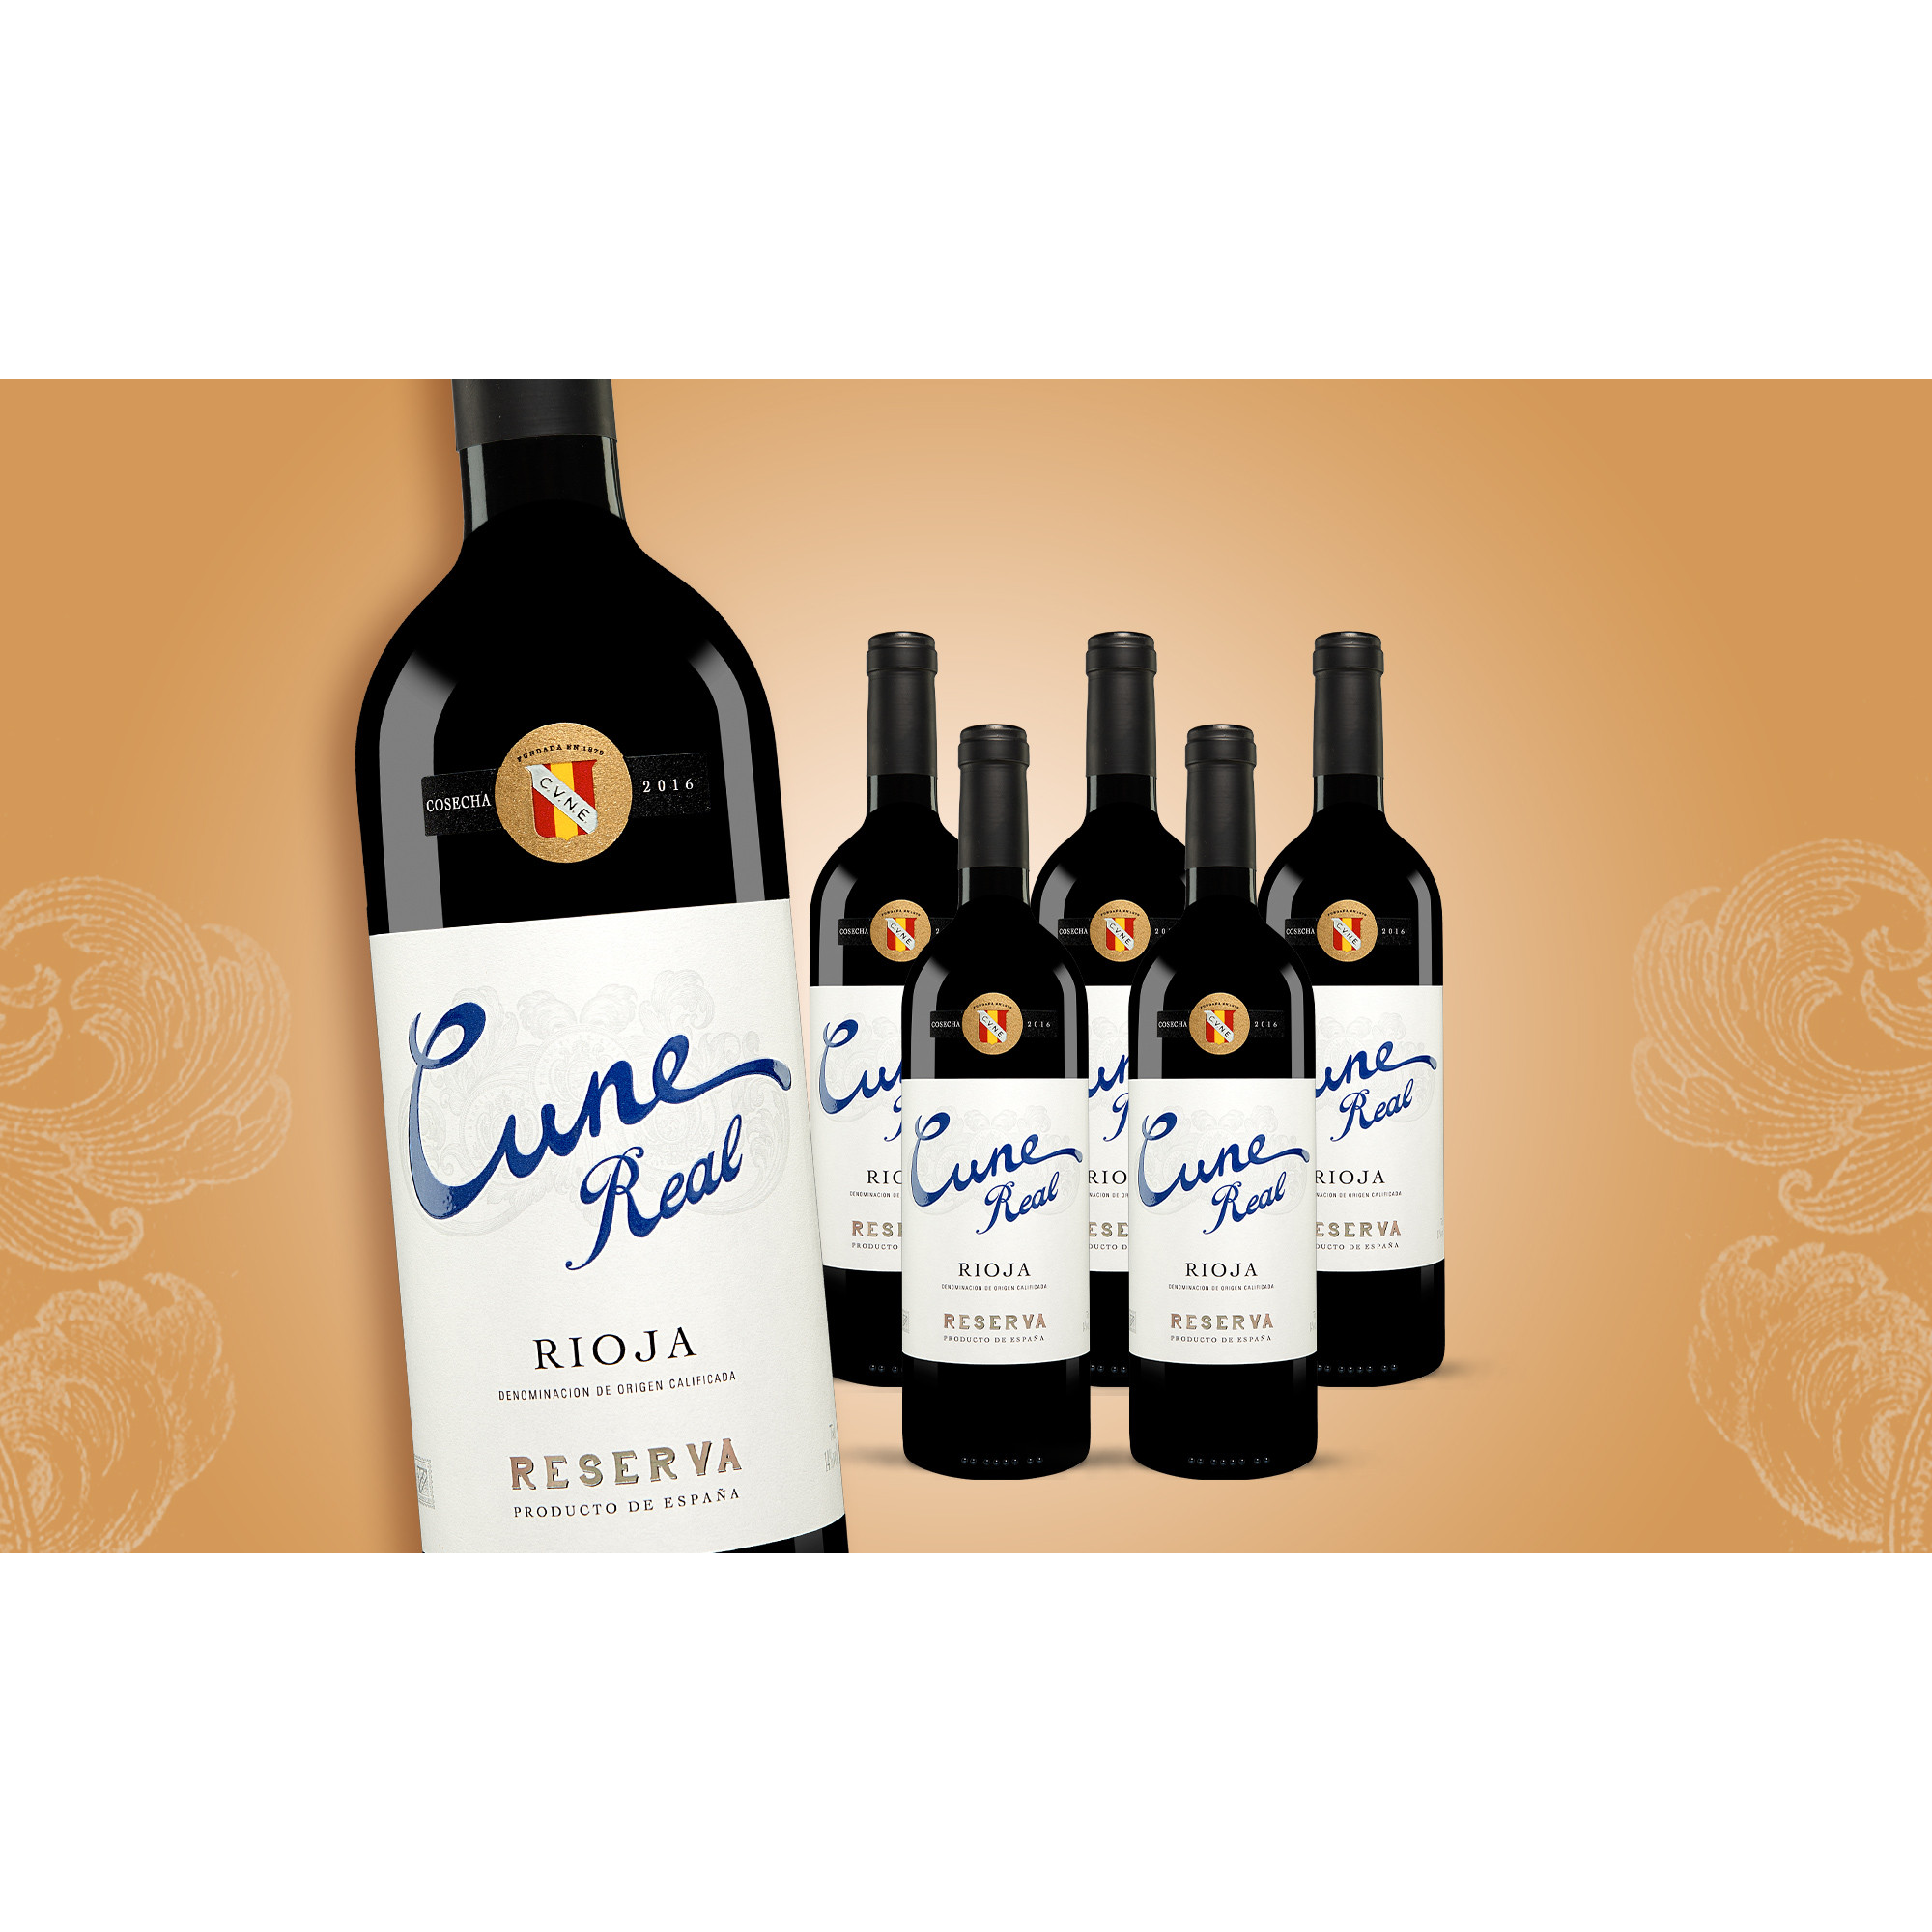 Cune Real Reserva 2016  4.5L Weinpaket aus Spanien 30715 vinos DE